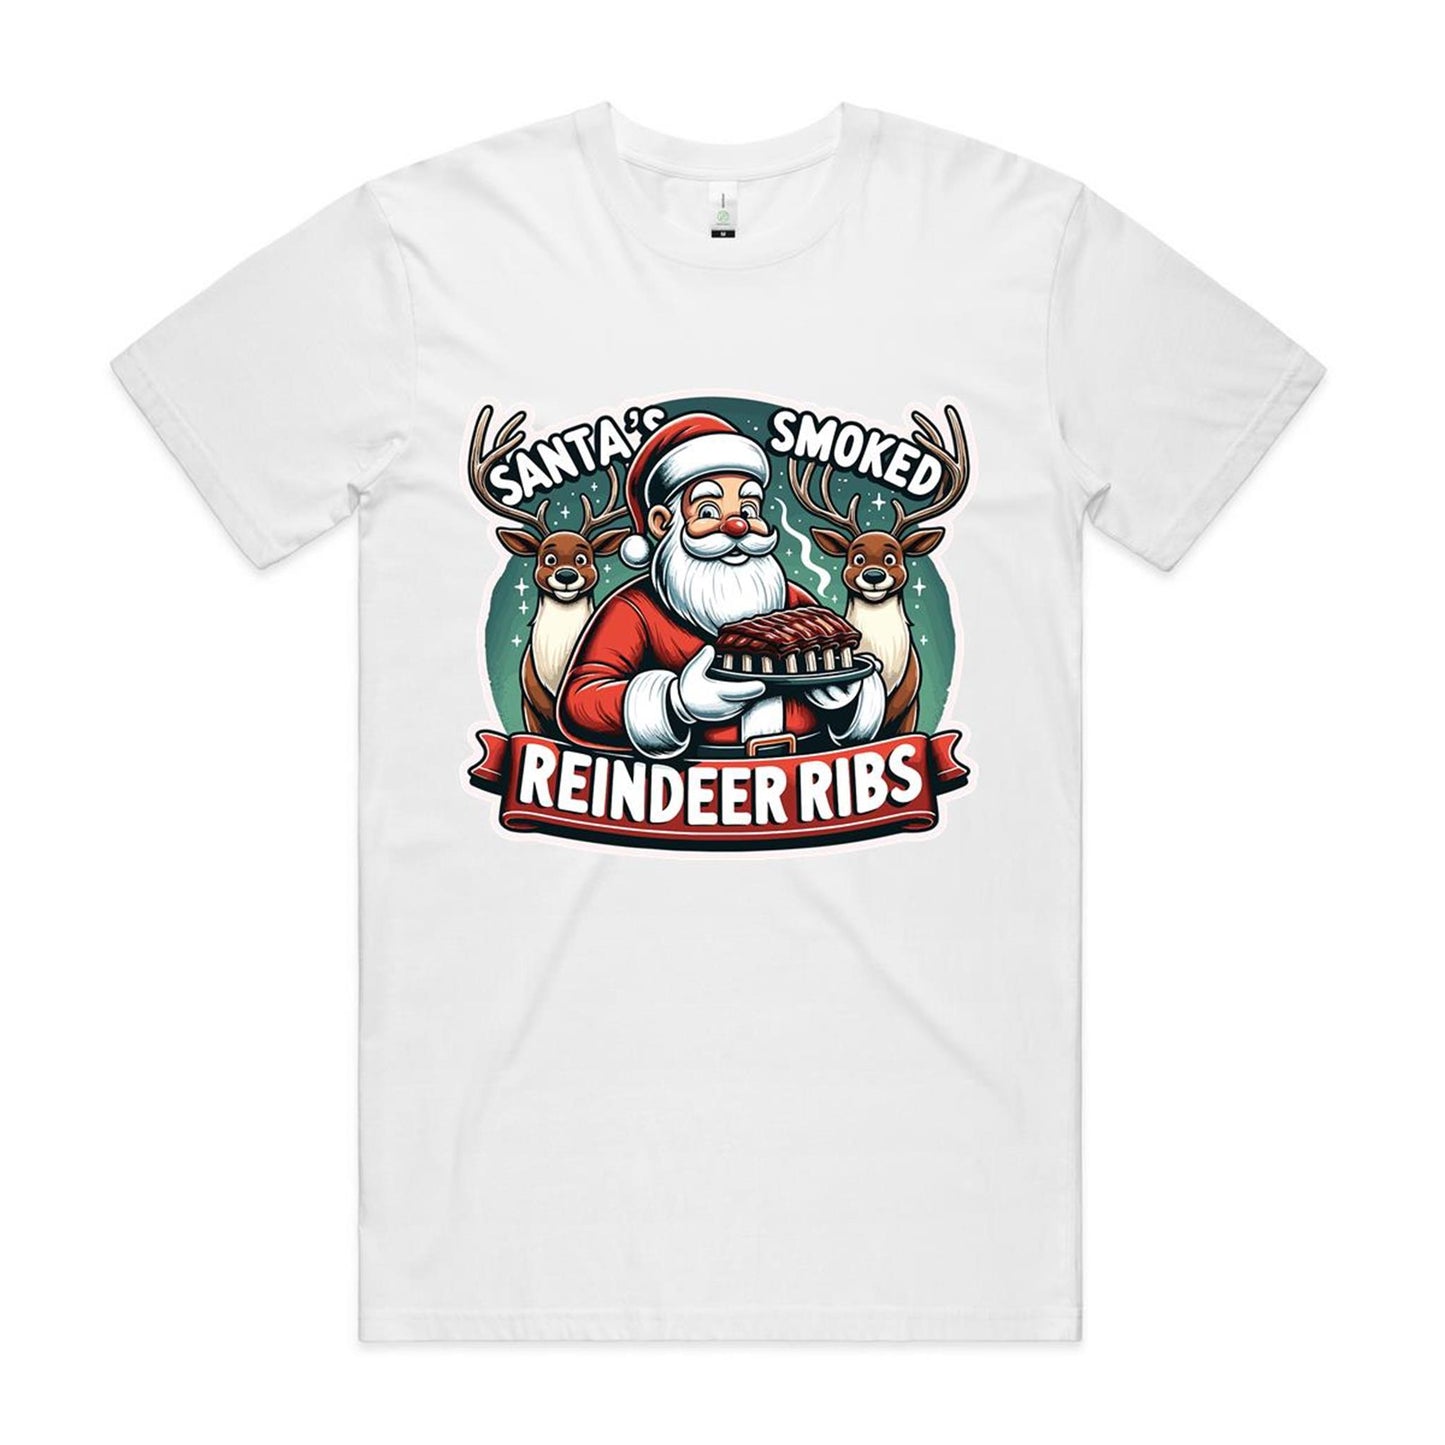 Santa's Smoked Reindeer Ribs - Christmas Day T-shirt